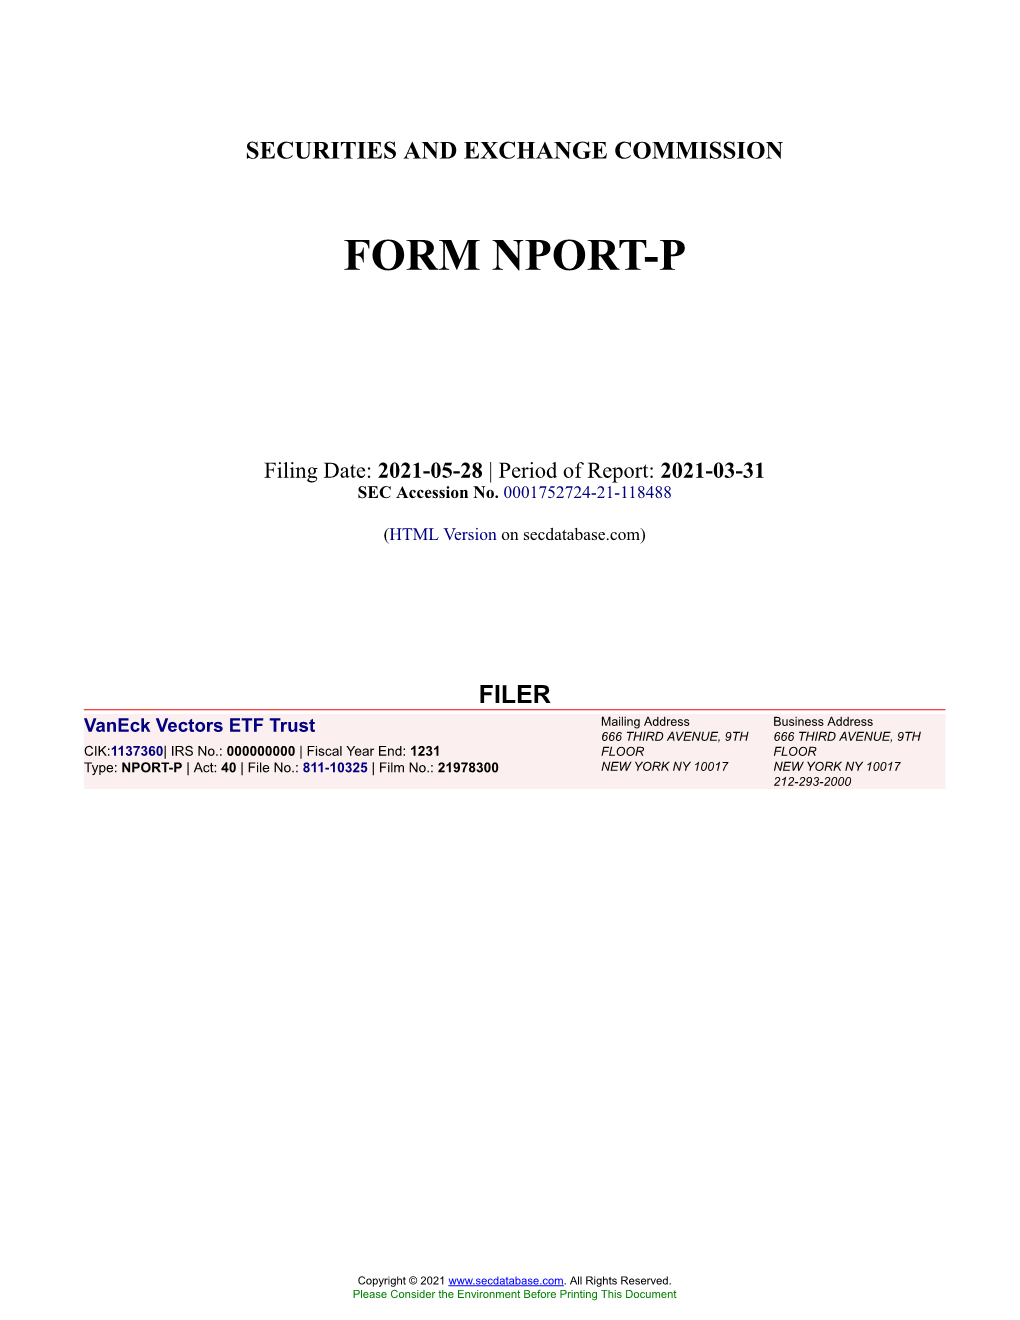 Vaneck Vectors ETF Trust Form NPORT-P Filed 2021-05-28